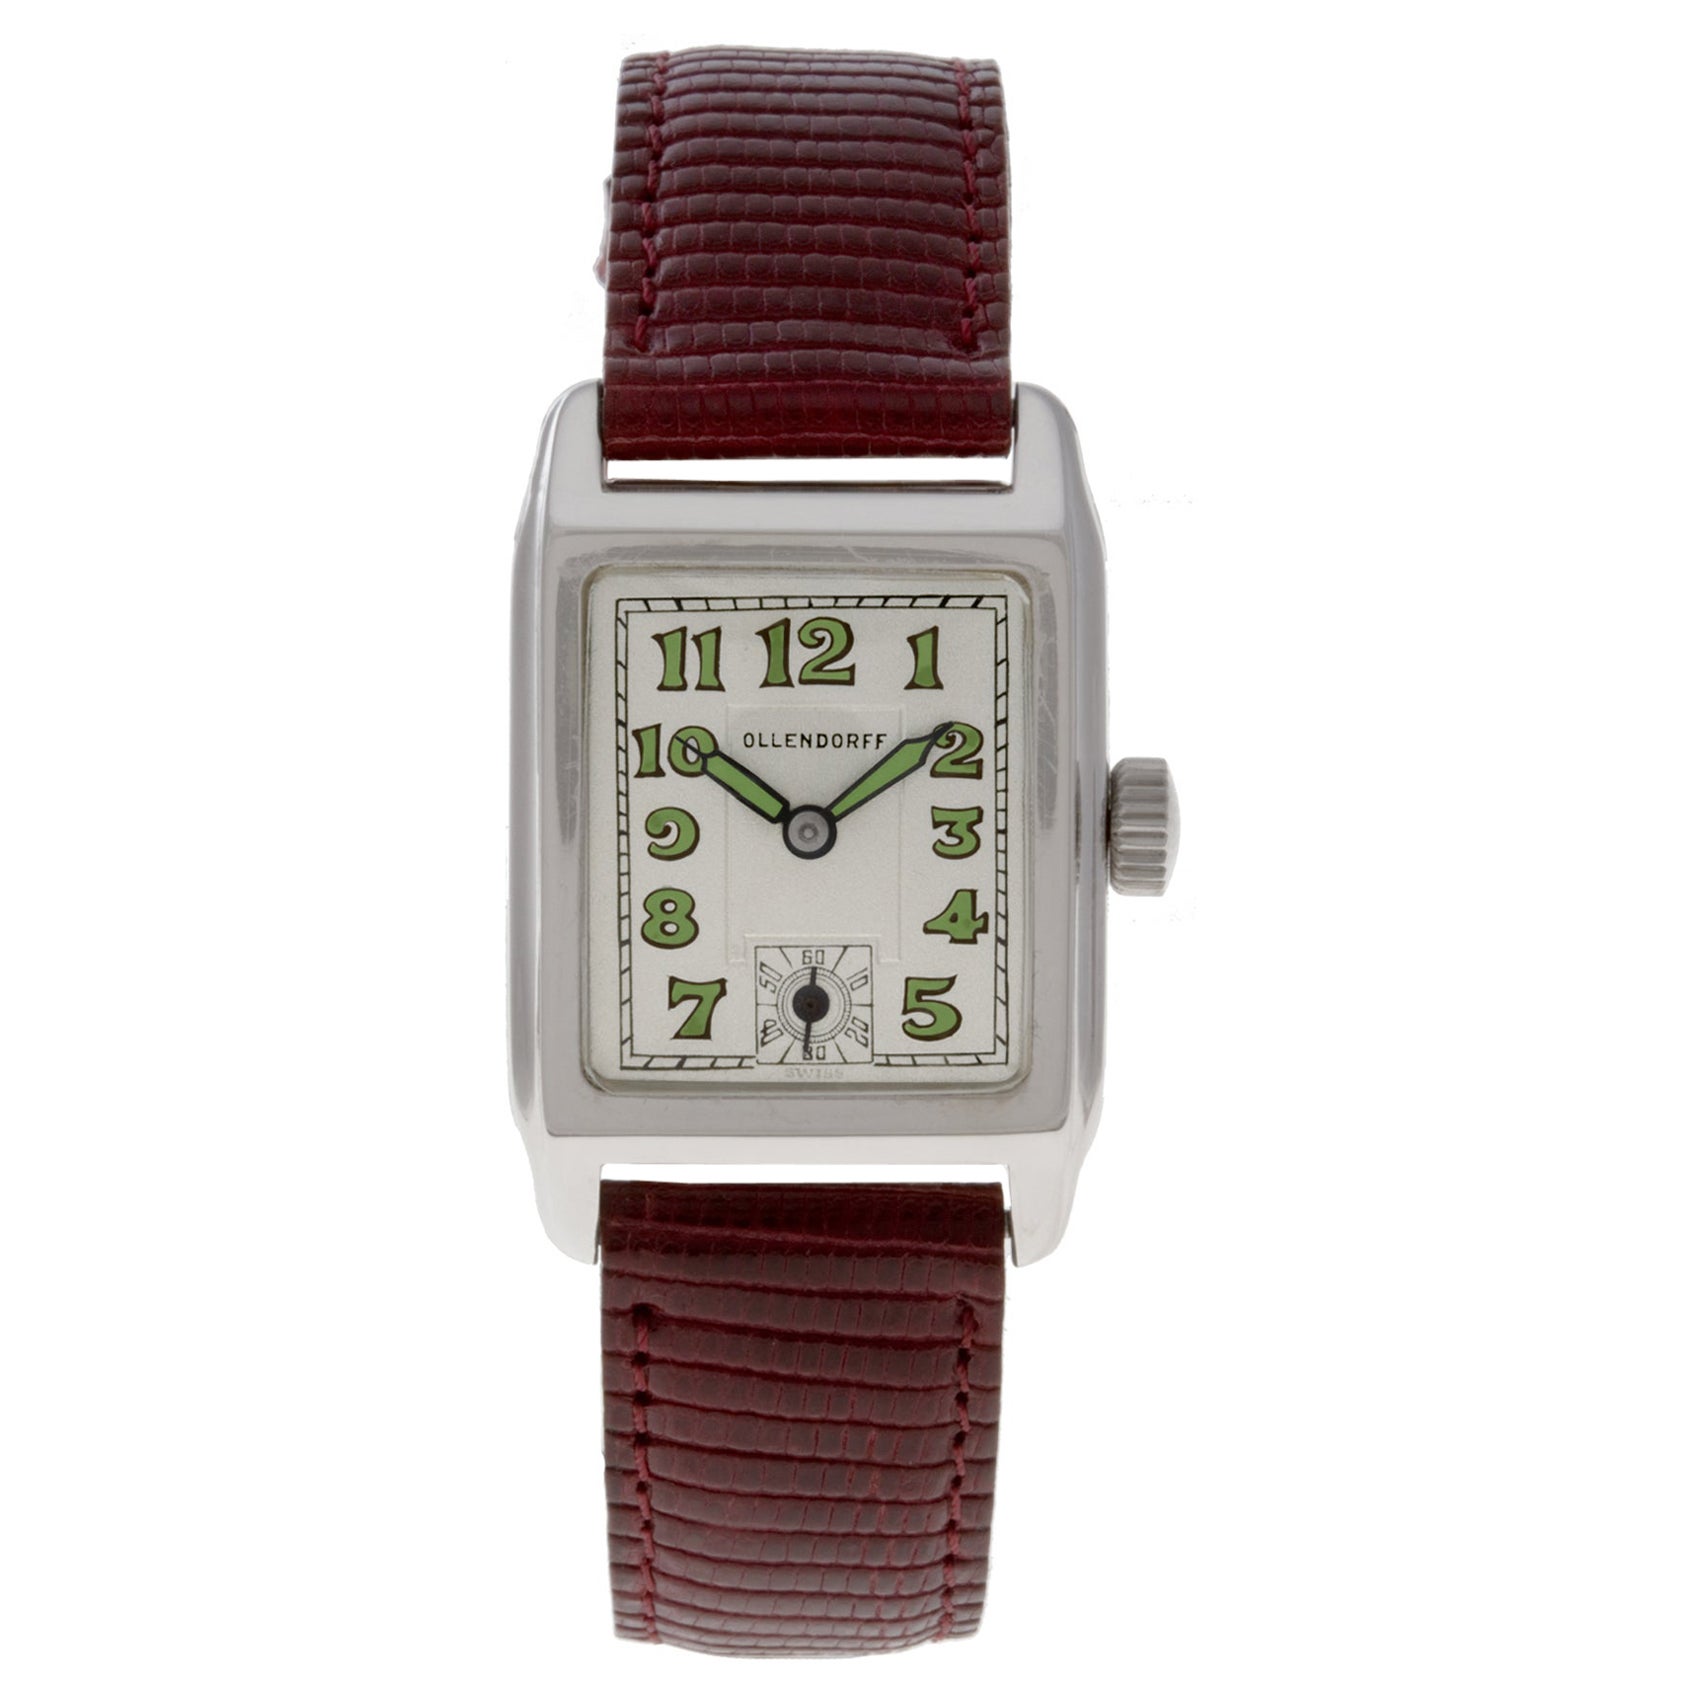 Ollendorff Classic Watch Ref 3865 14k White Gold Case Manual 